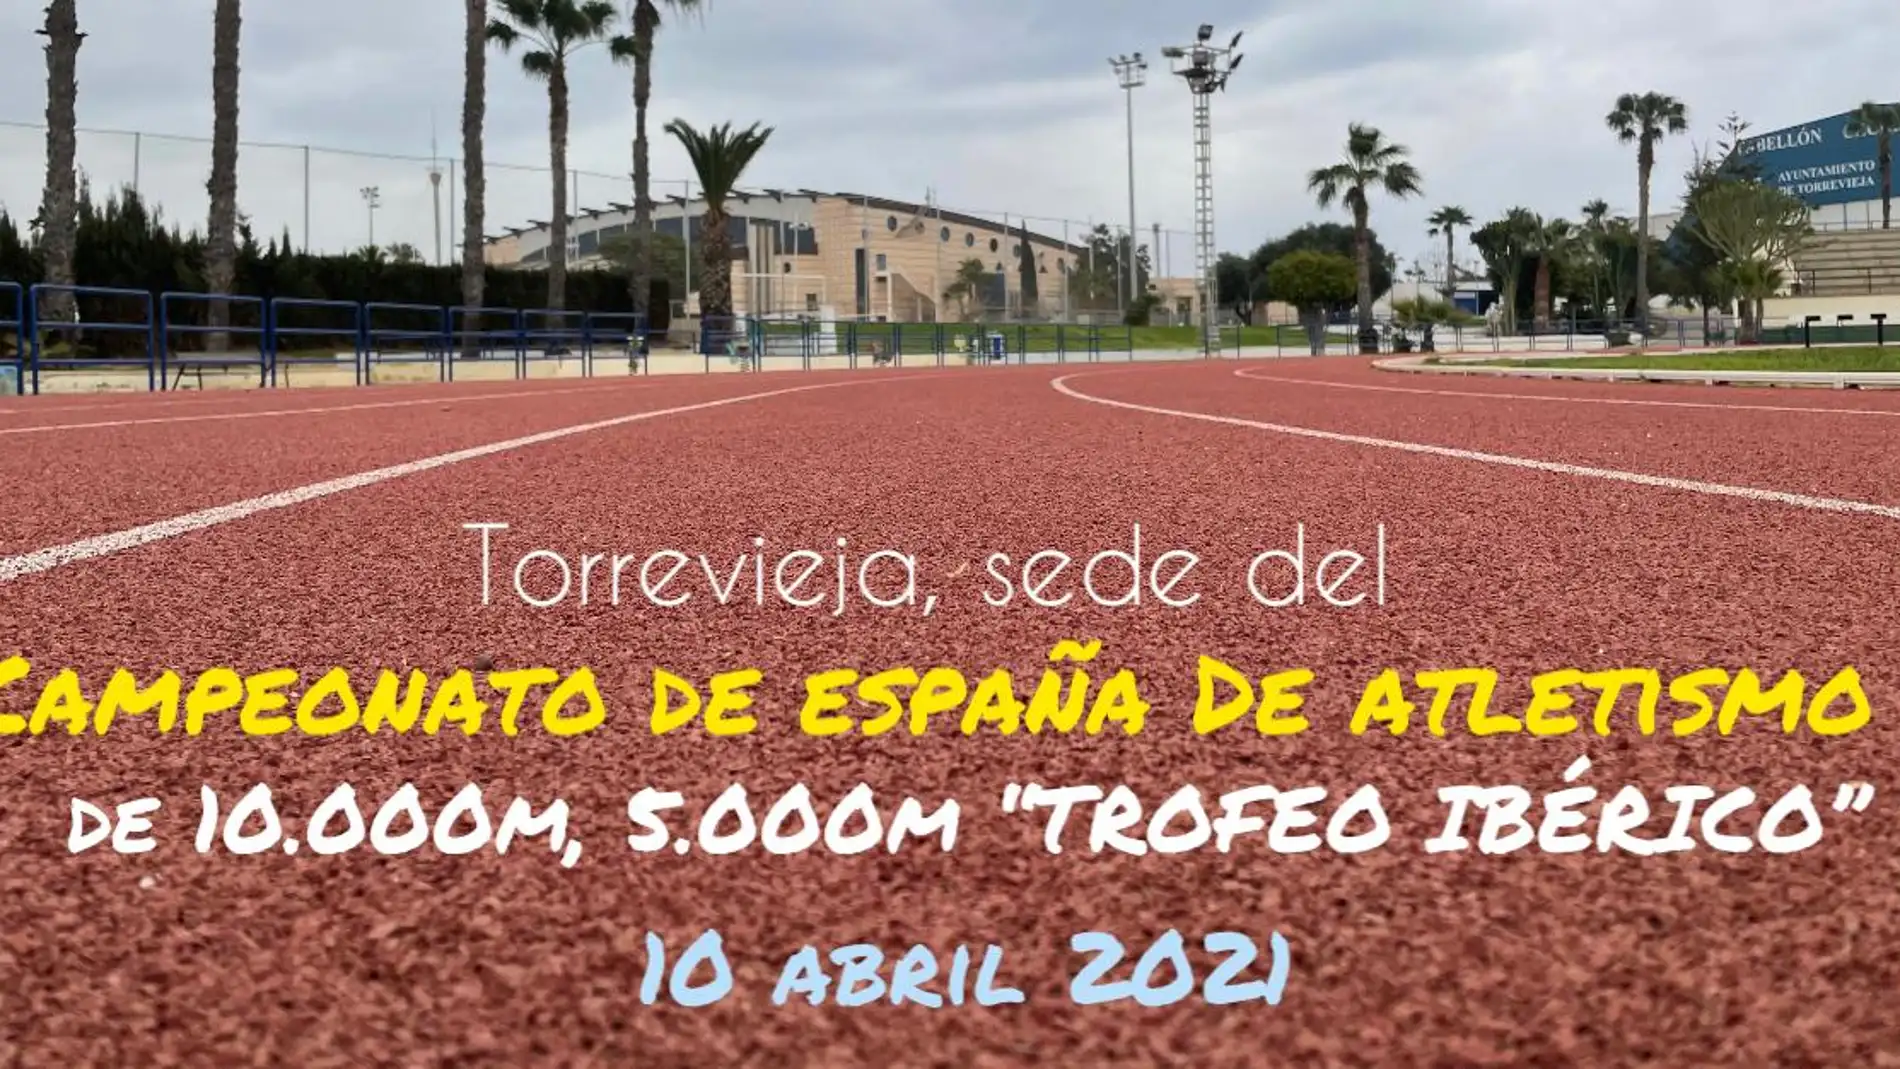 Esta importante competición se celebrará el sábado 10 de abril en la pista municipal de atletismo Daniel Plaza, y competirá toda la élite del atletismo español y portugués 